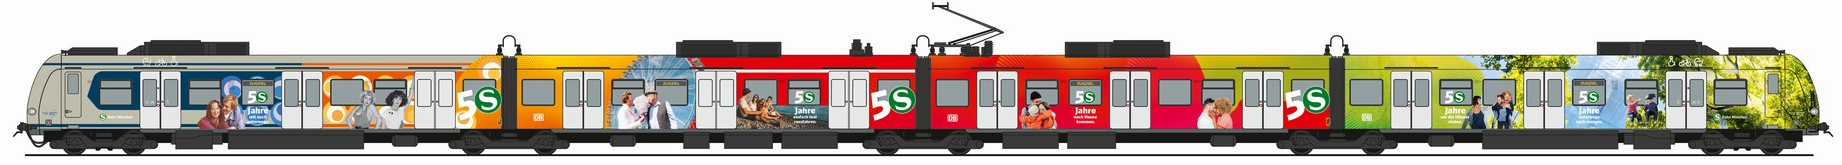 50 Jahre S-Bahn München - Jubiläumszug ET 423